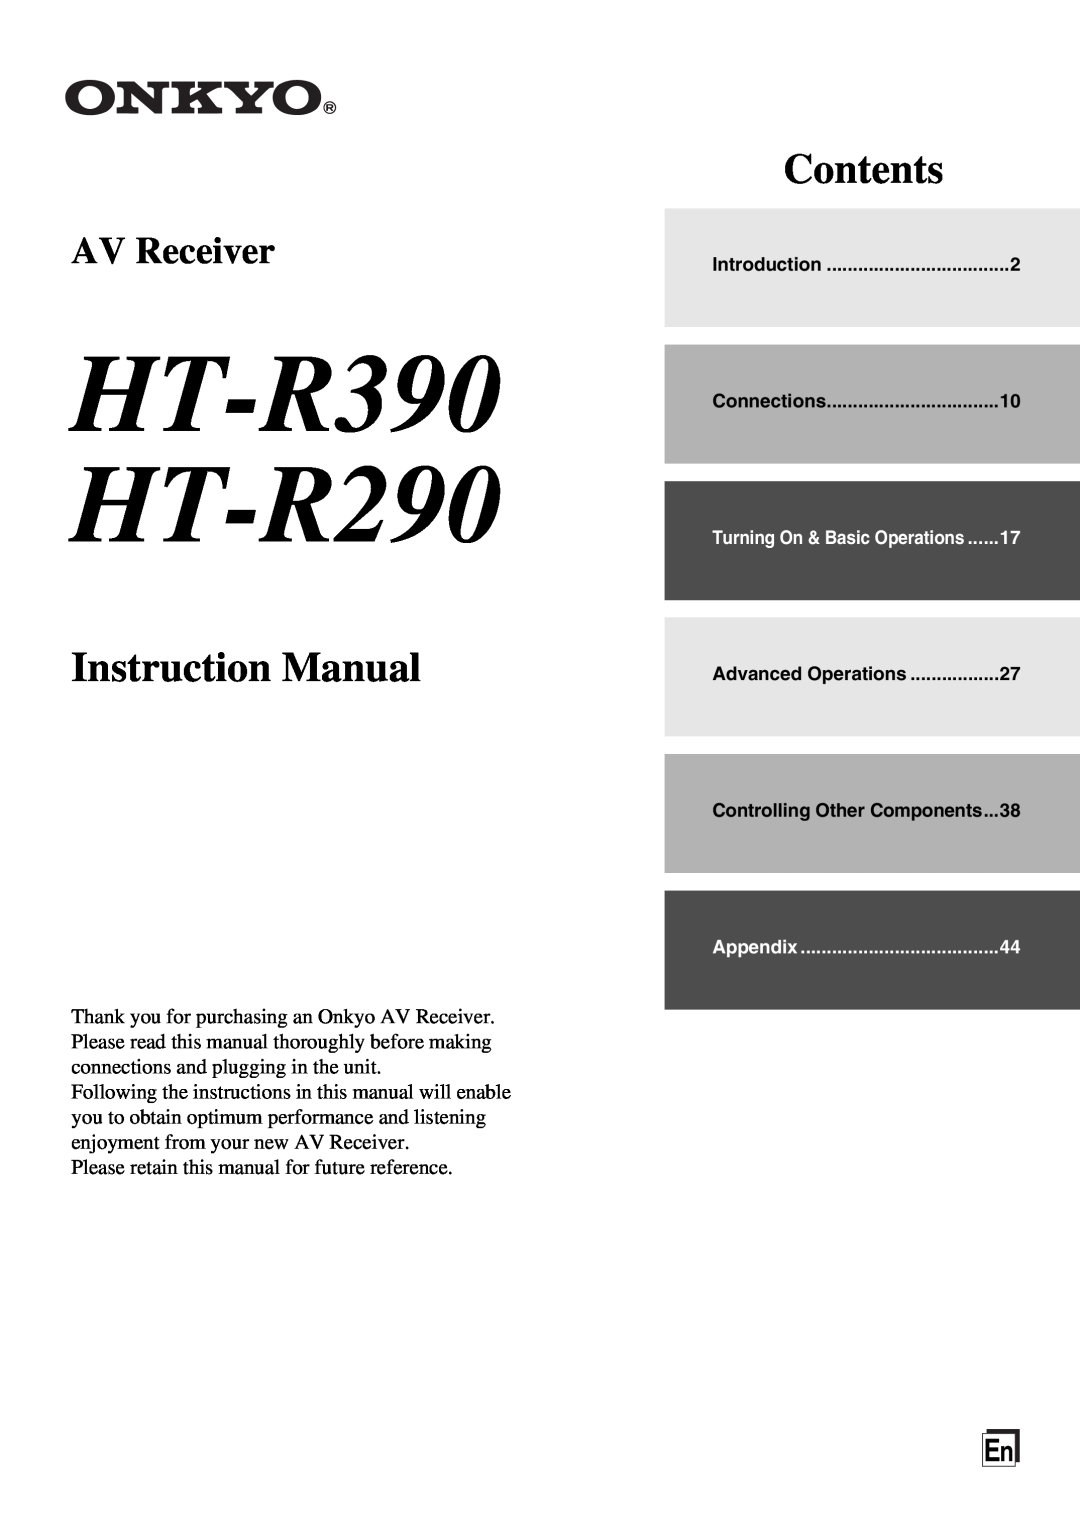 Onkyo instruction manual HT-R390 HT-R290, Contents, AV Receiver 